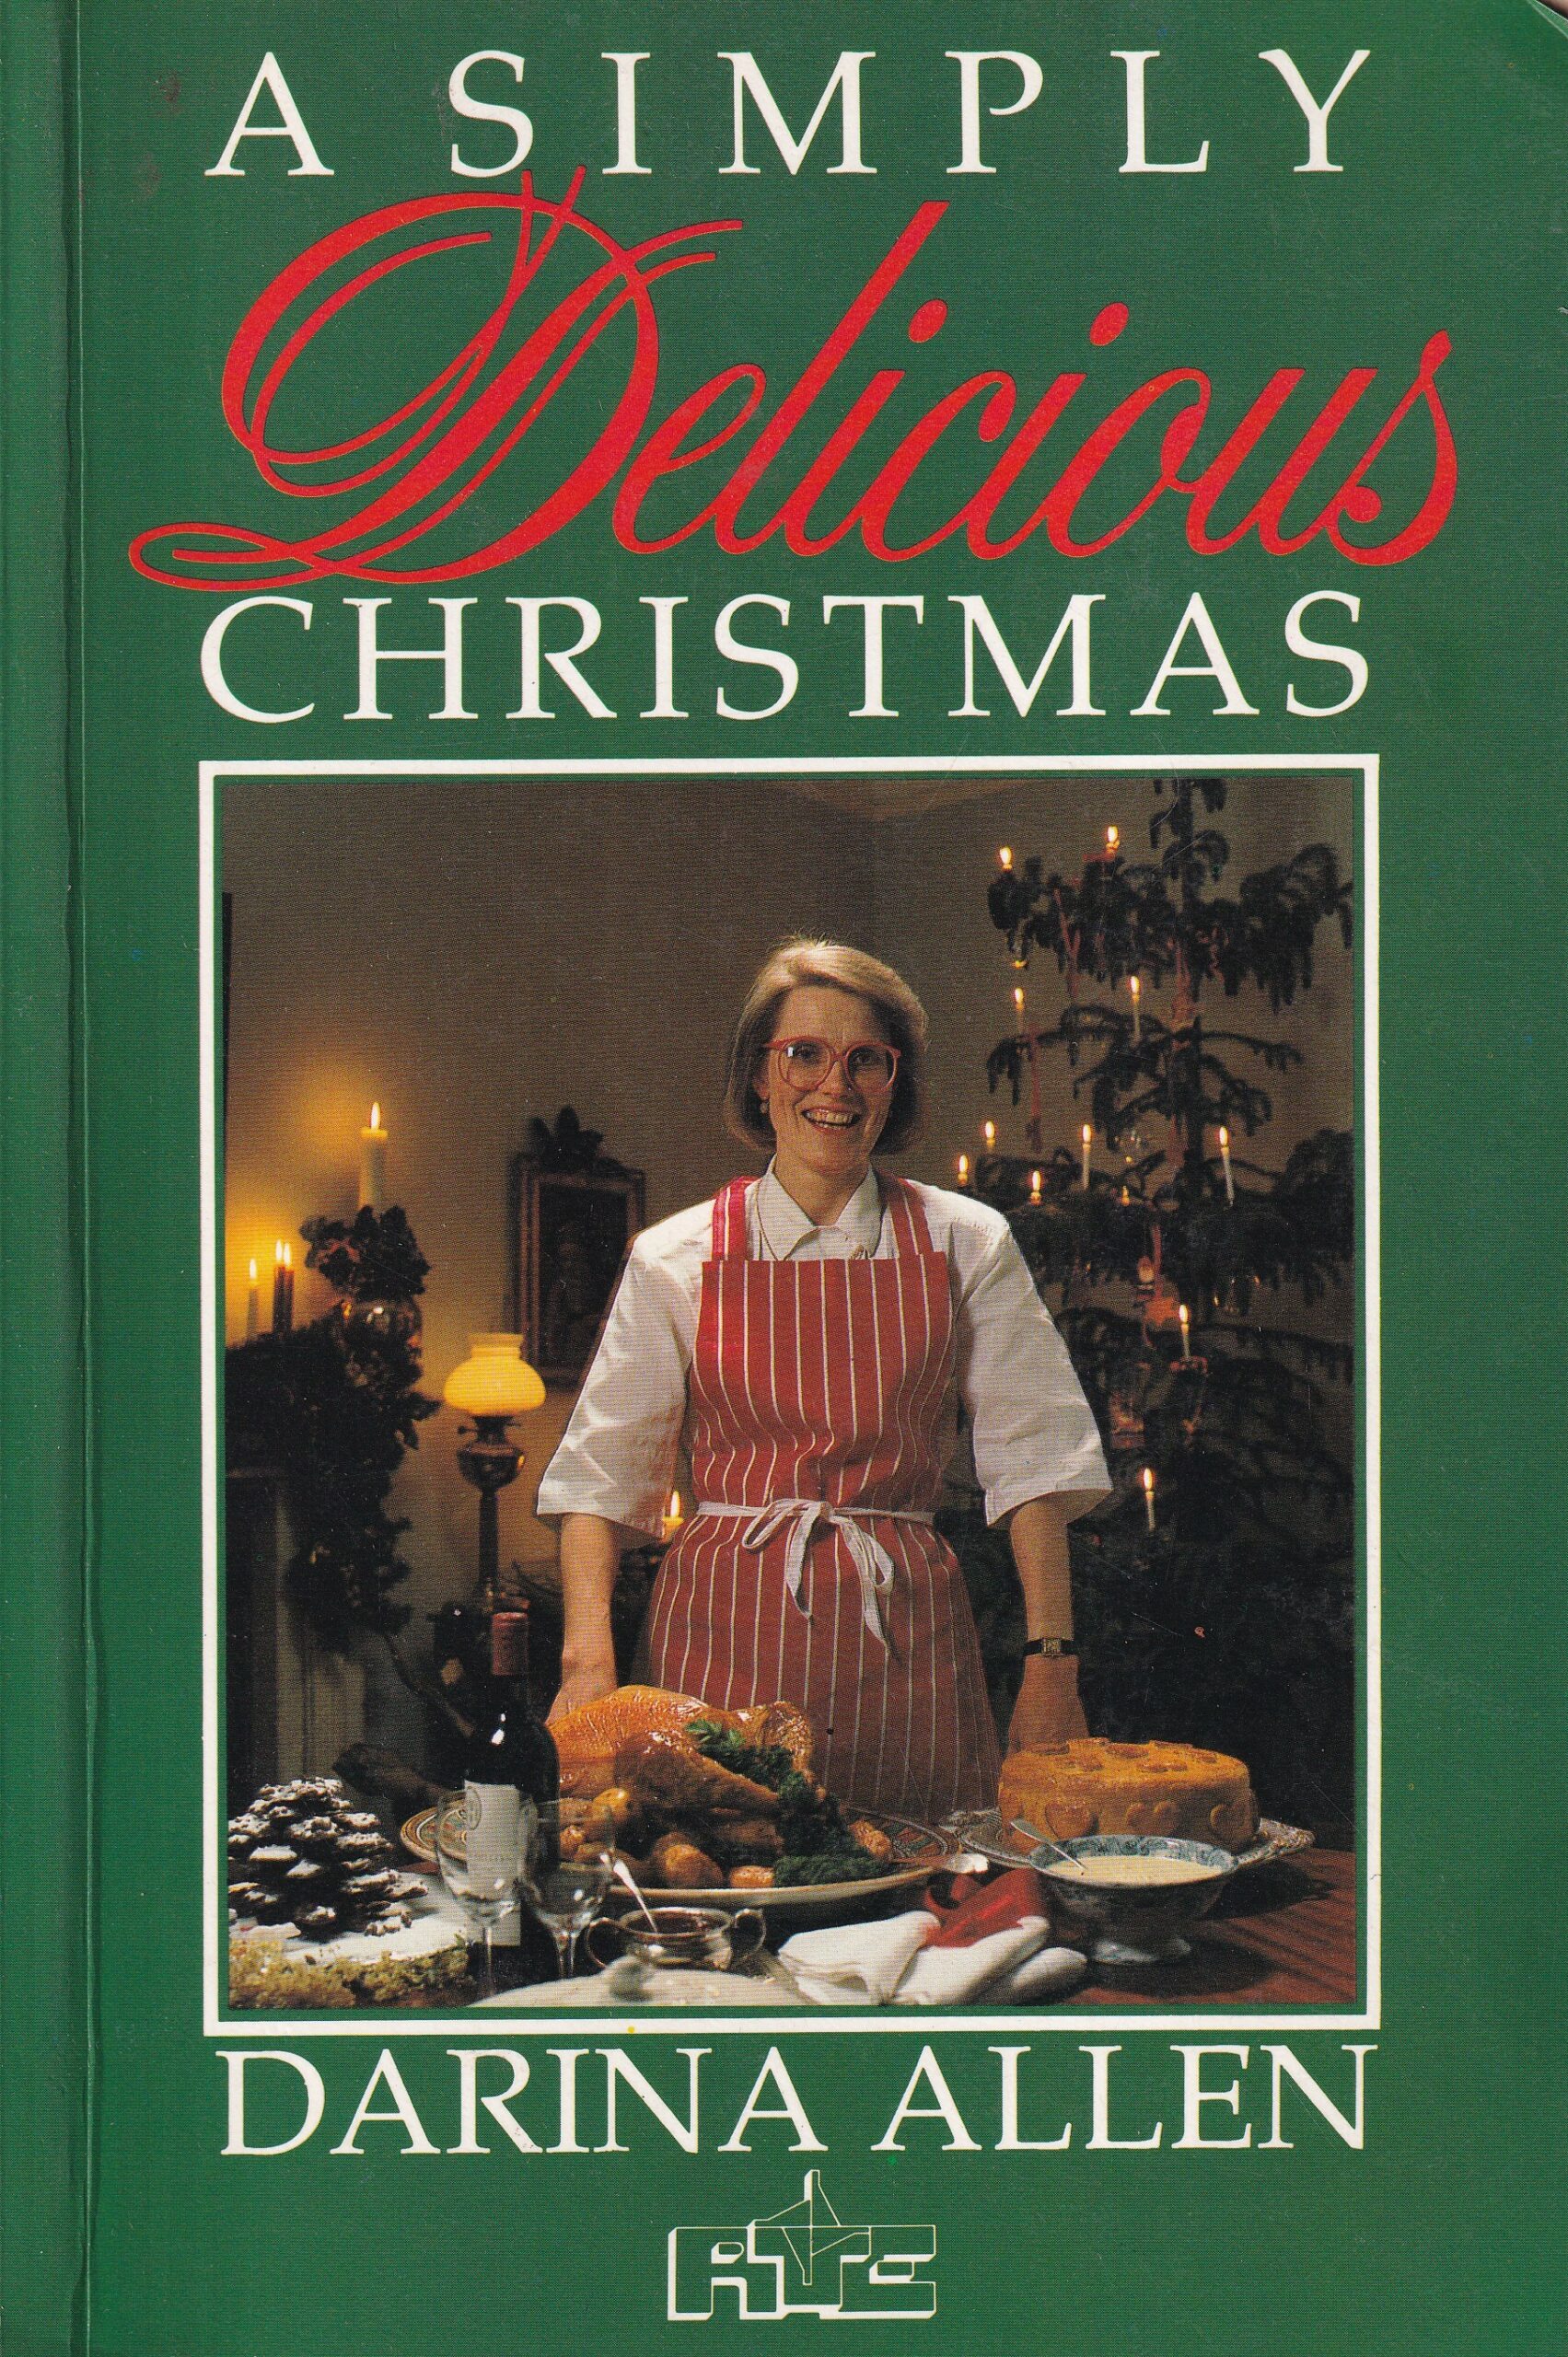 A Simply Delicious Christmas by Darina Allen